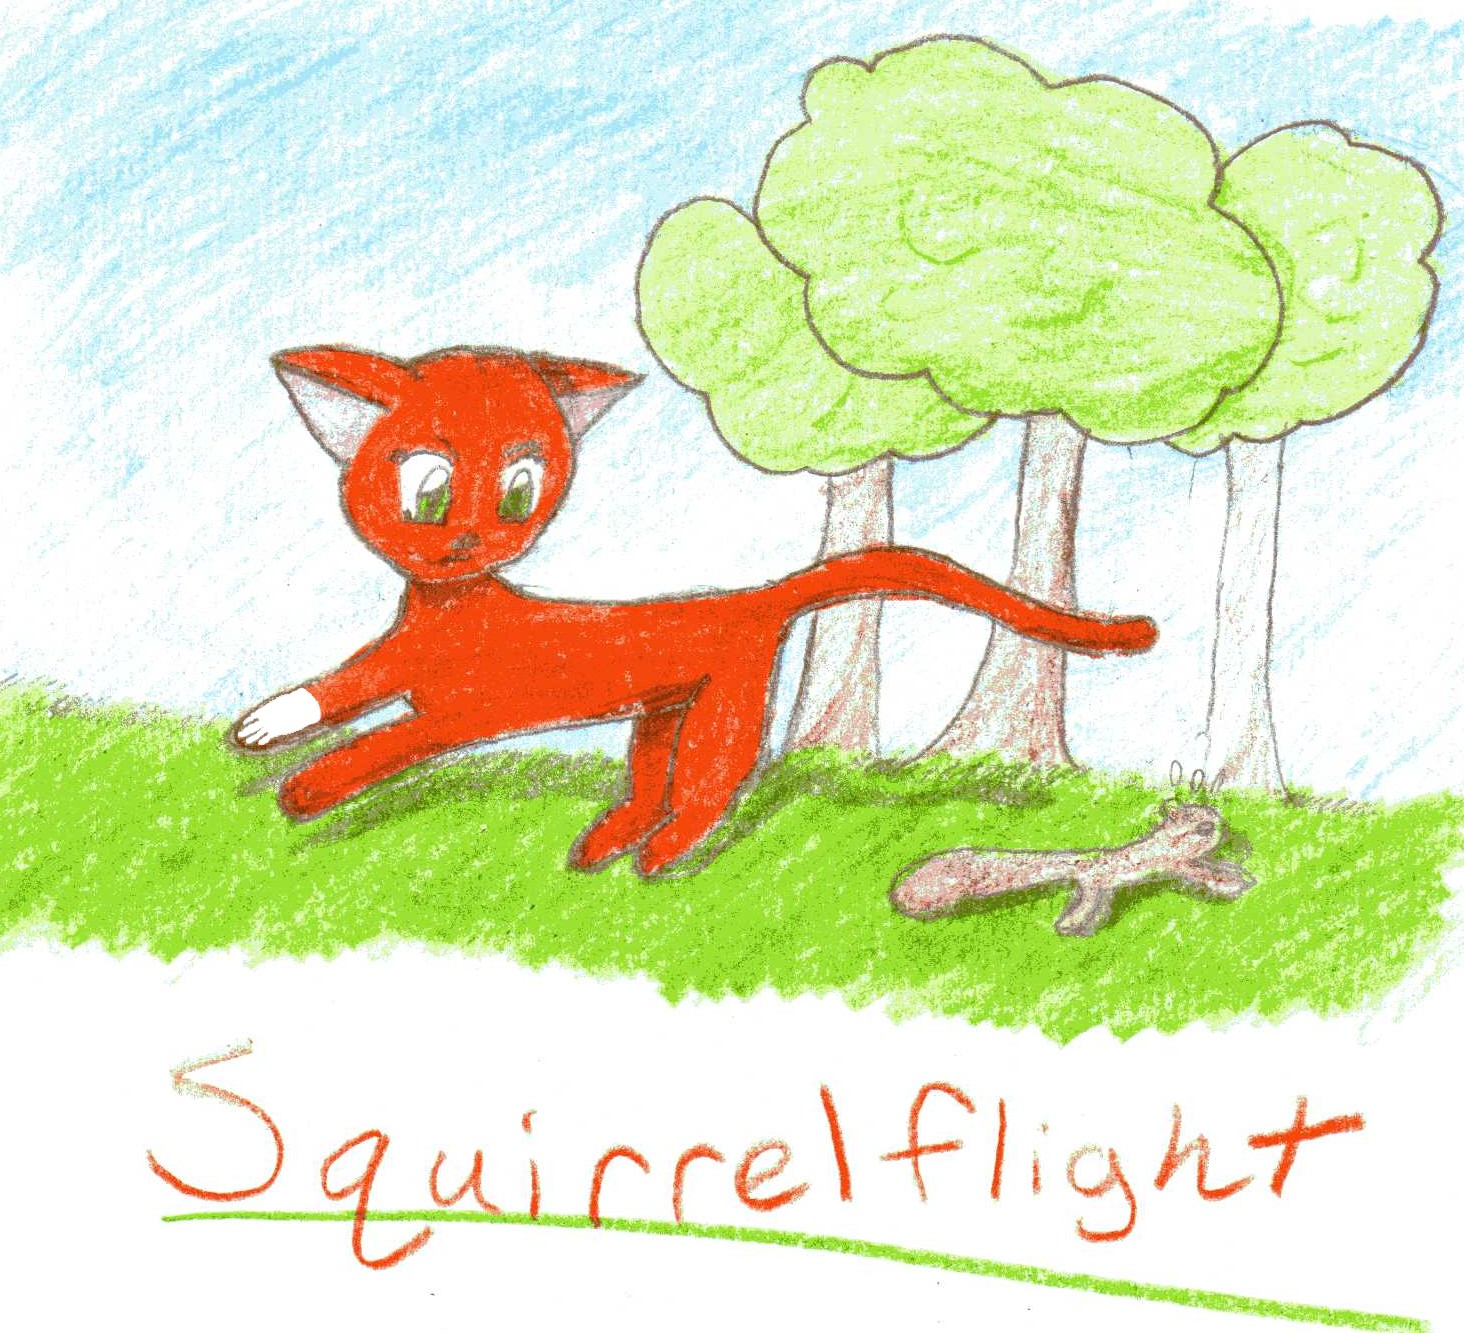 Squirrelflight_by_Mew_Blueberry.jpg